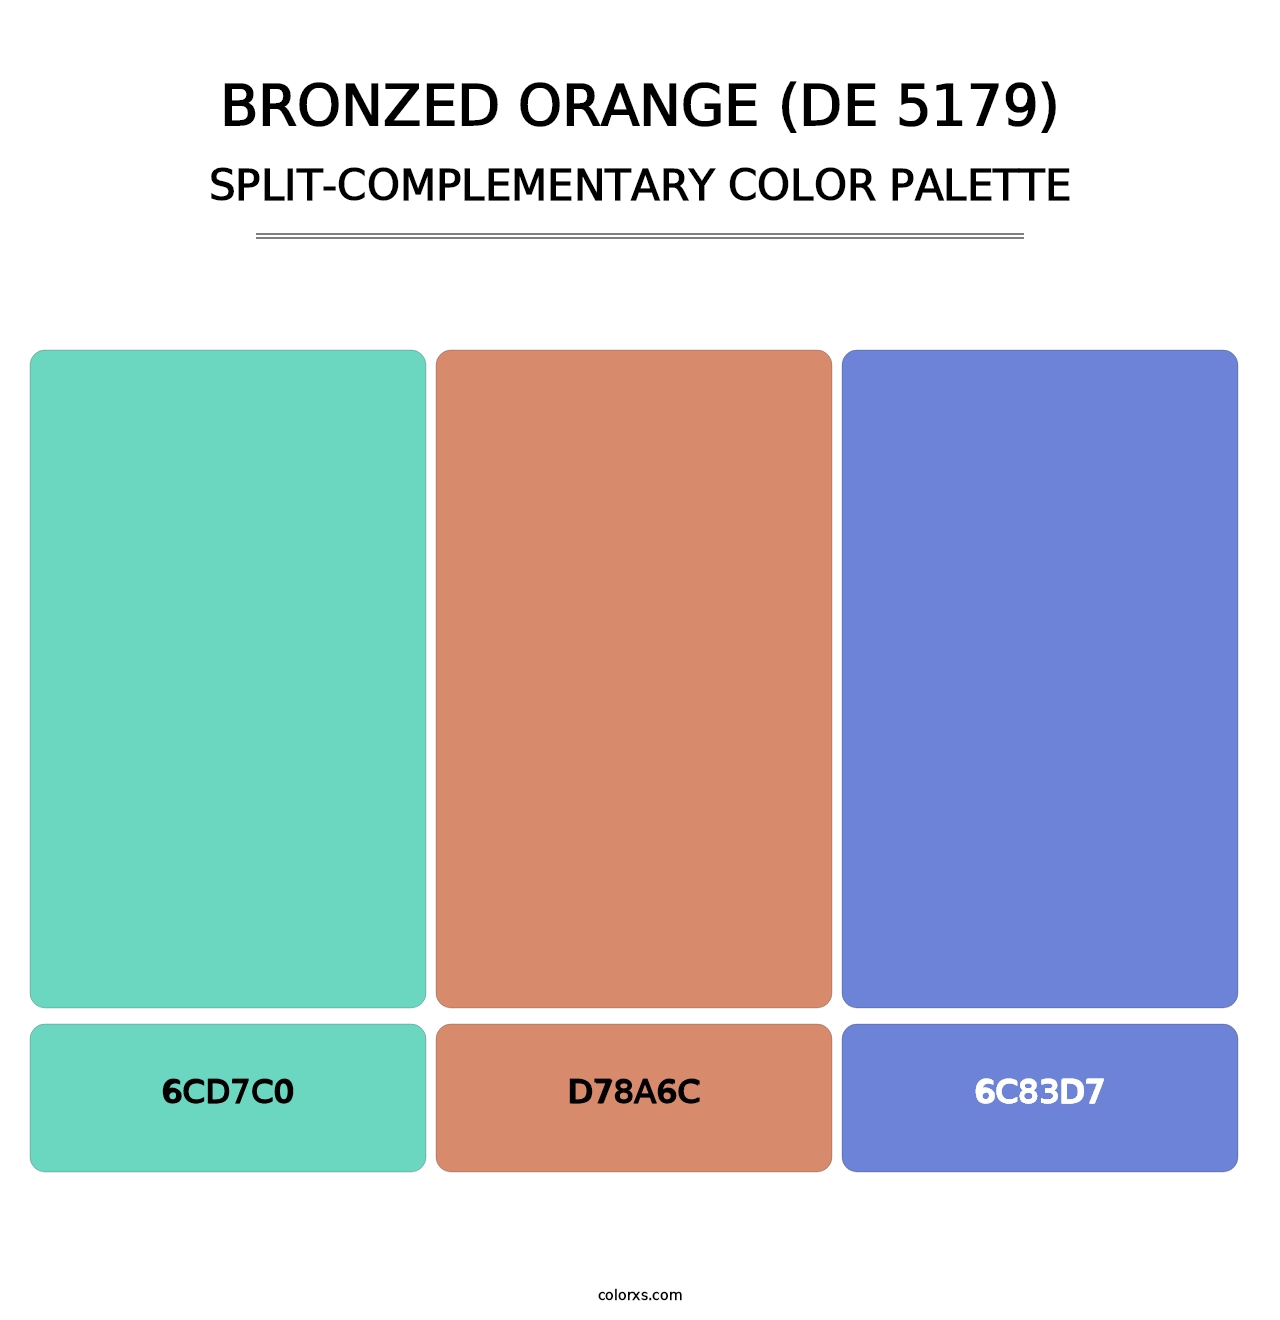 Bronzed Orange (DE 5179) - Split-Complementary Color Palette